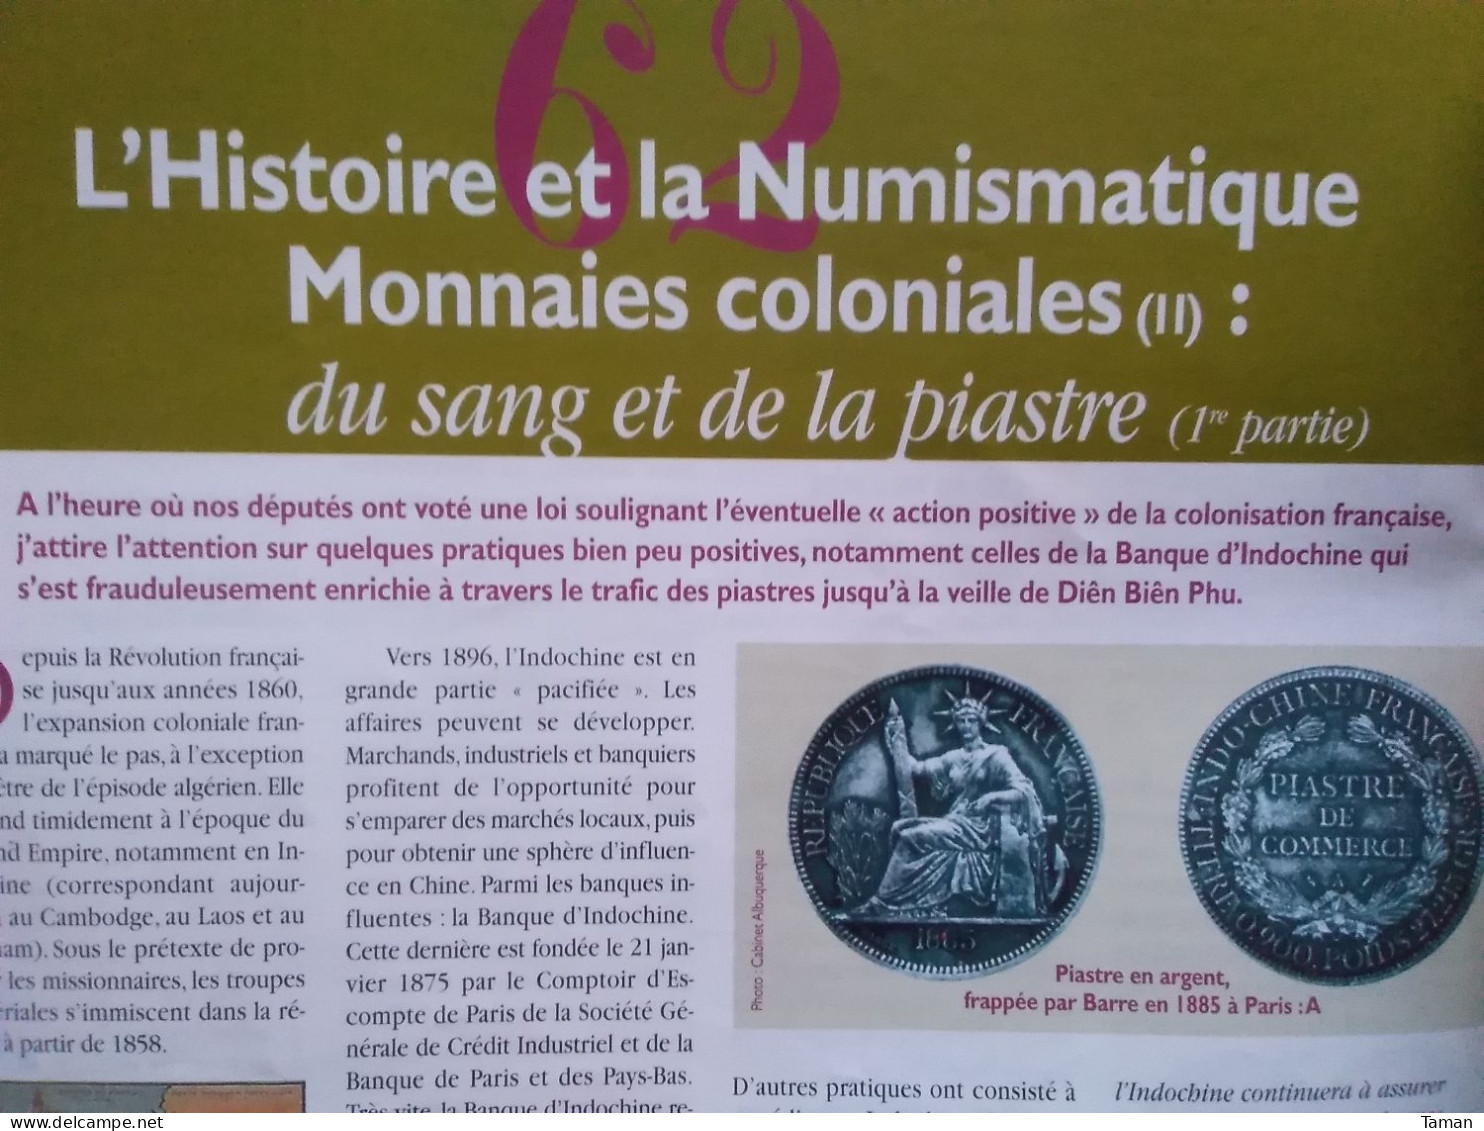 Numismatique & change - Monnaie de Paris - Rome - Montpellier - Dombes Indochine - Napoléon 40 F or